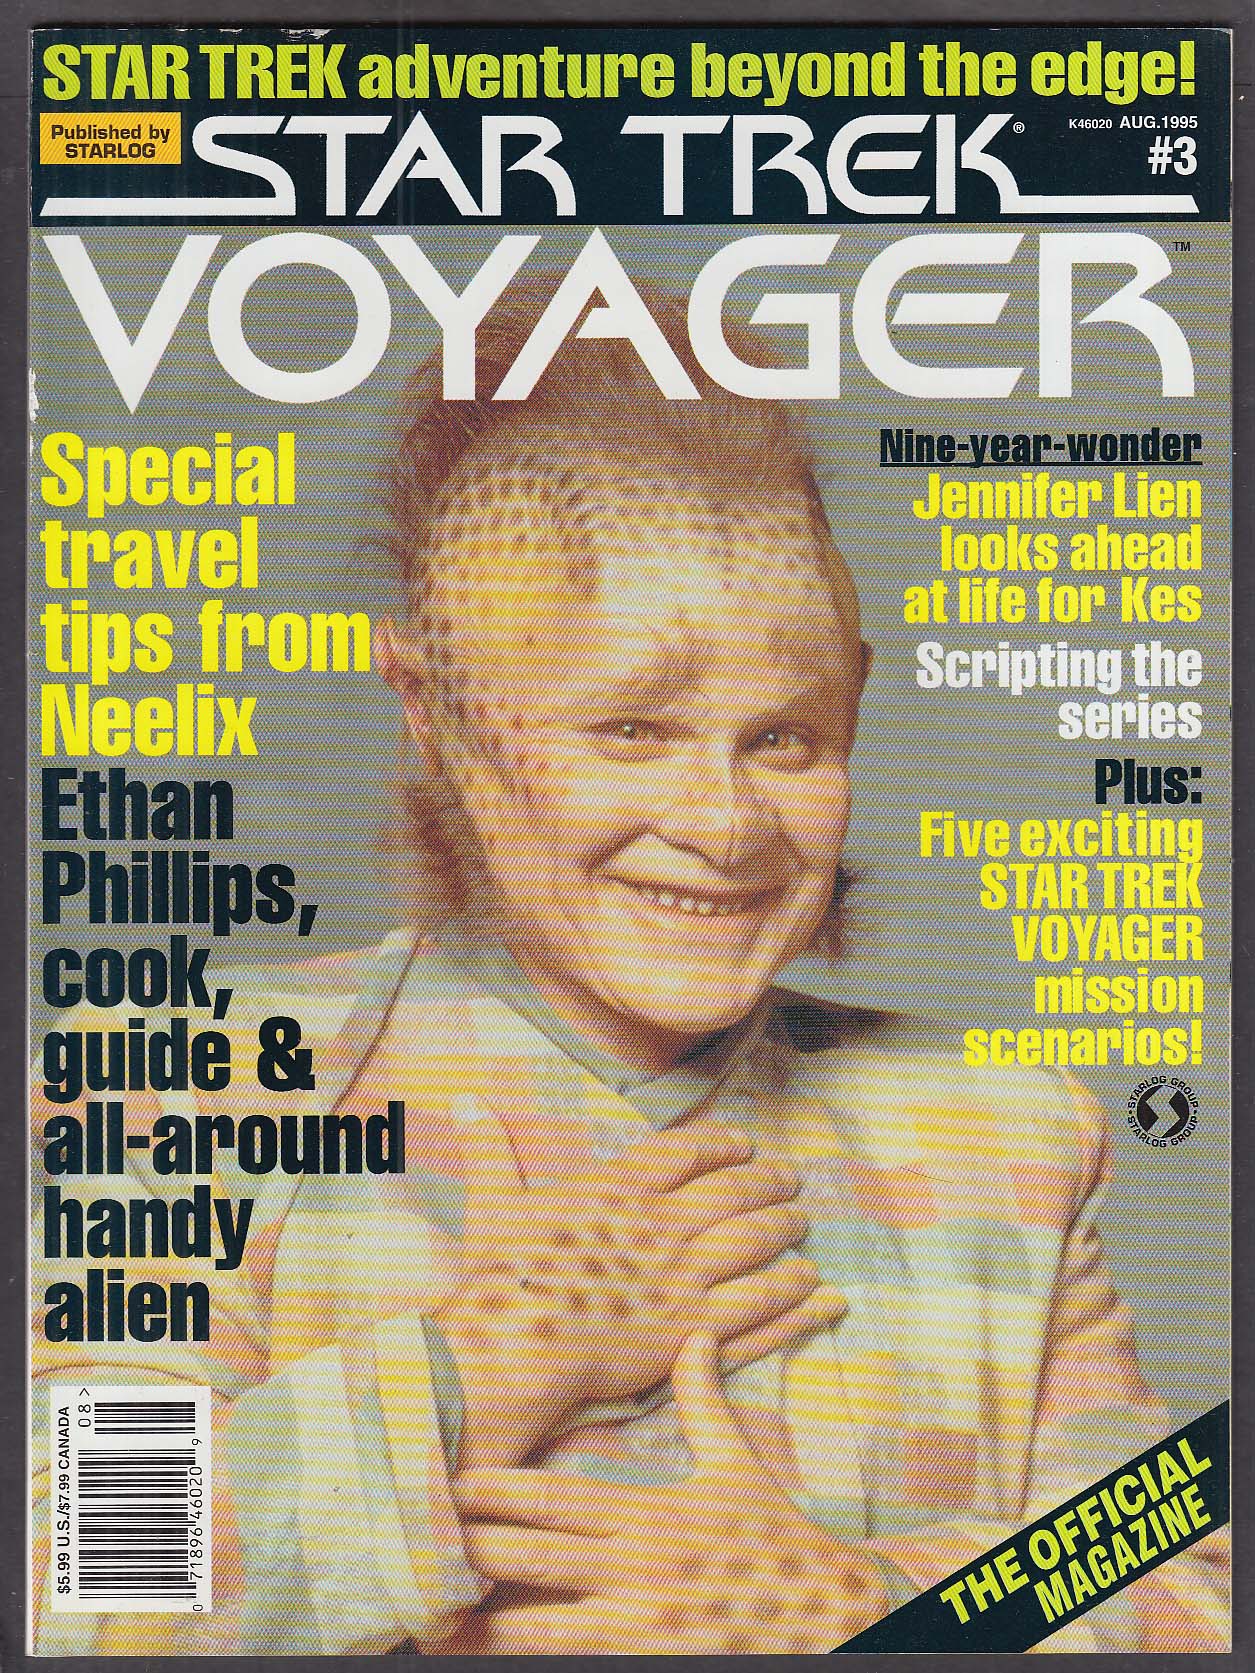 Magazine 3. Voyager журнал. Журнал 1995. Итан Филлипс. Voyager 1 Magazine.